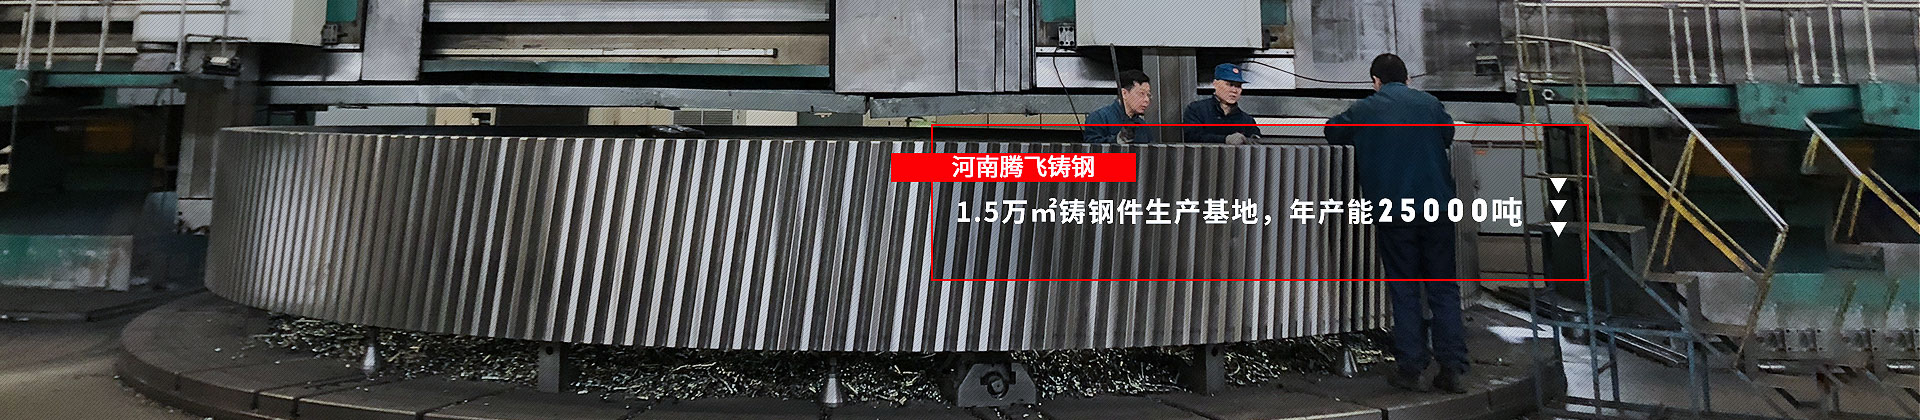 河南腾飞铸钢，1.5万㎡铸钢件生产基地，年产量25000吨